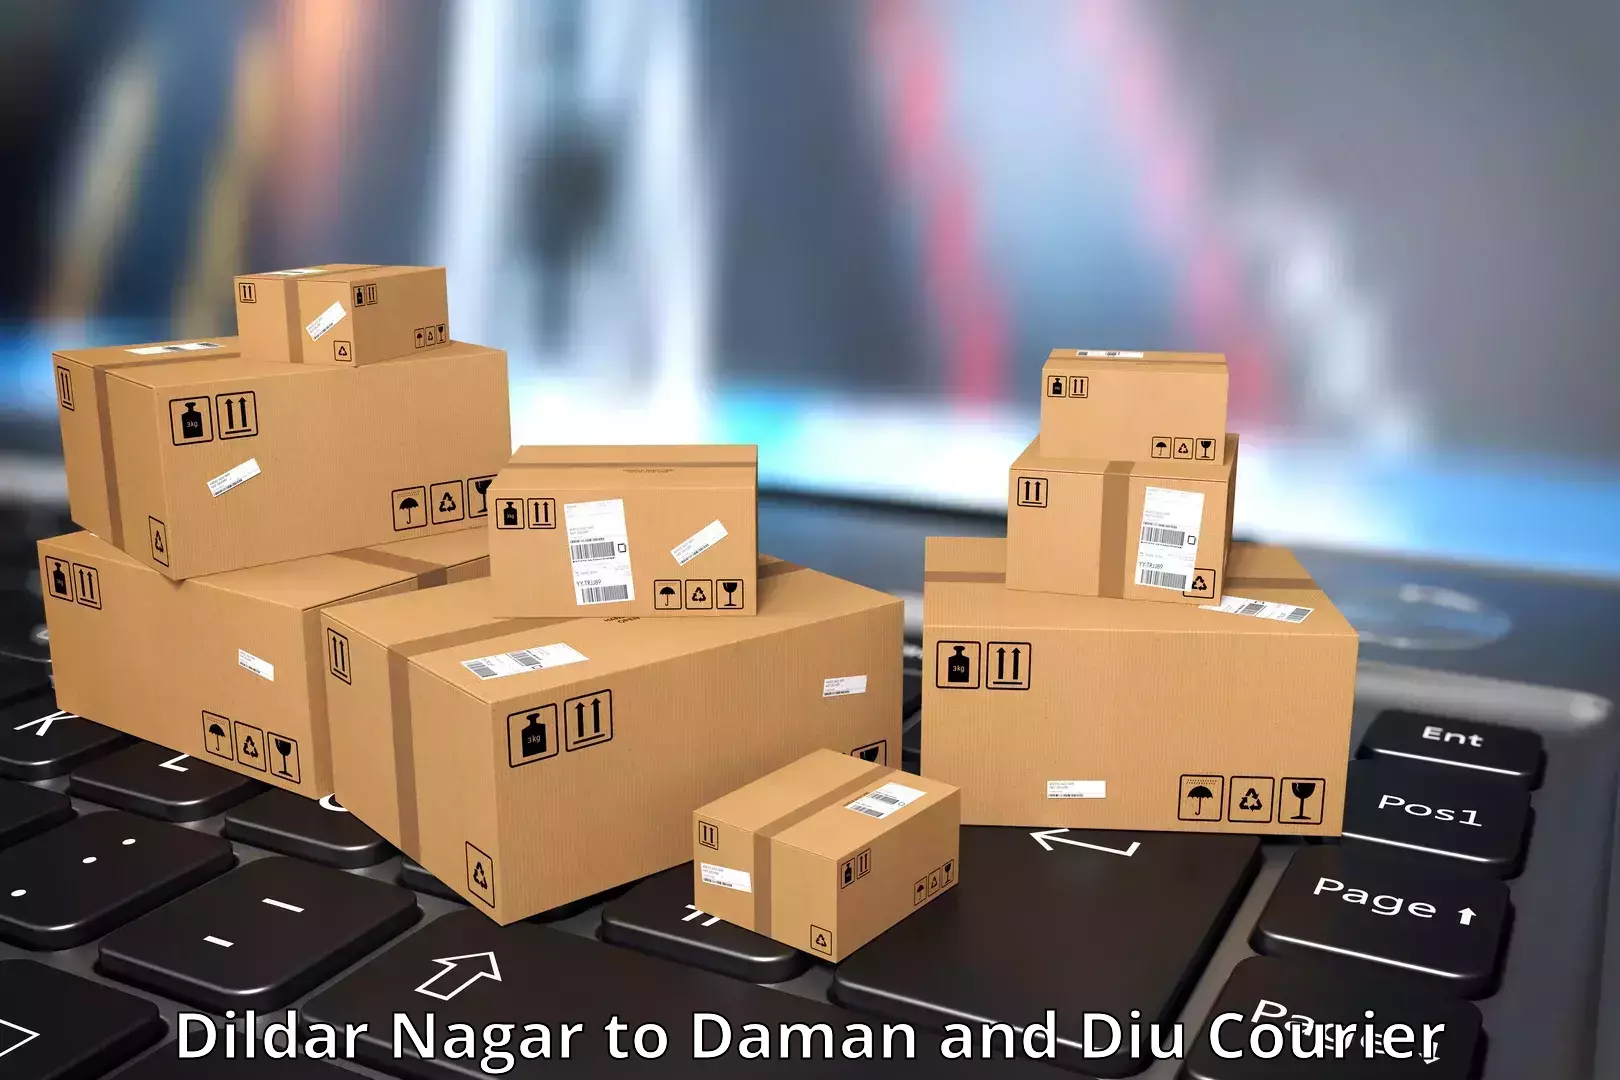 Express logistics service Dildar Nagar to Daman